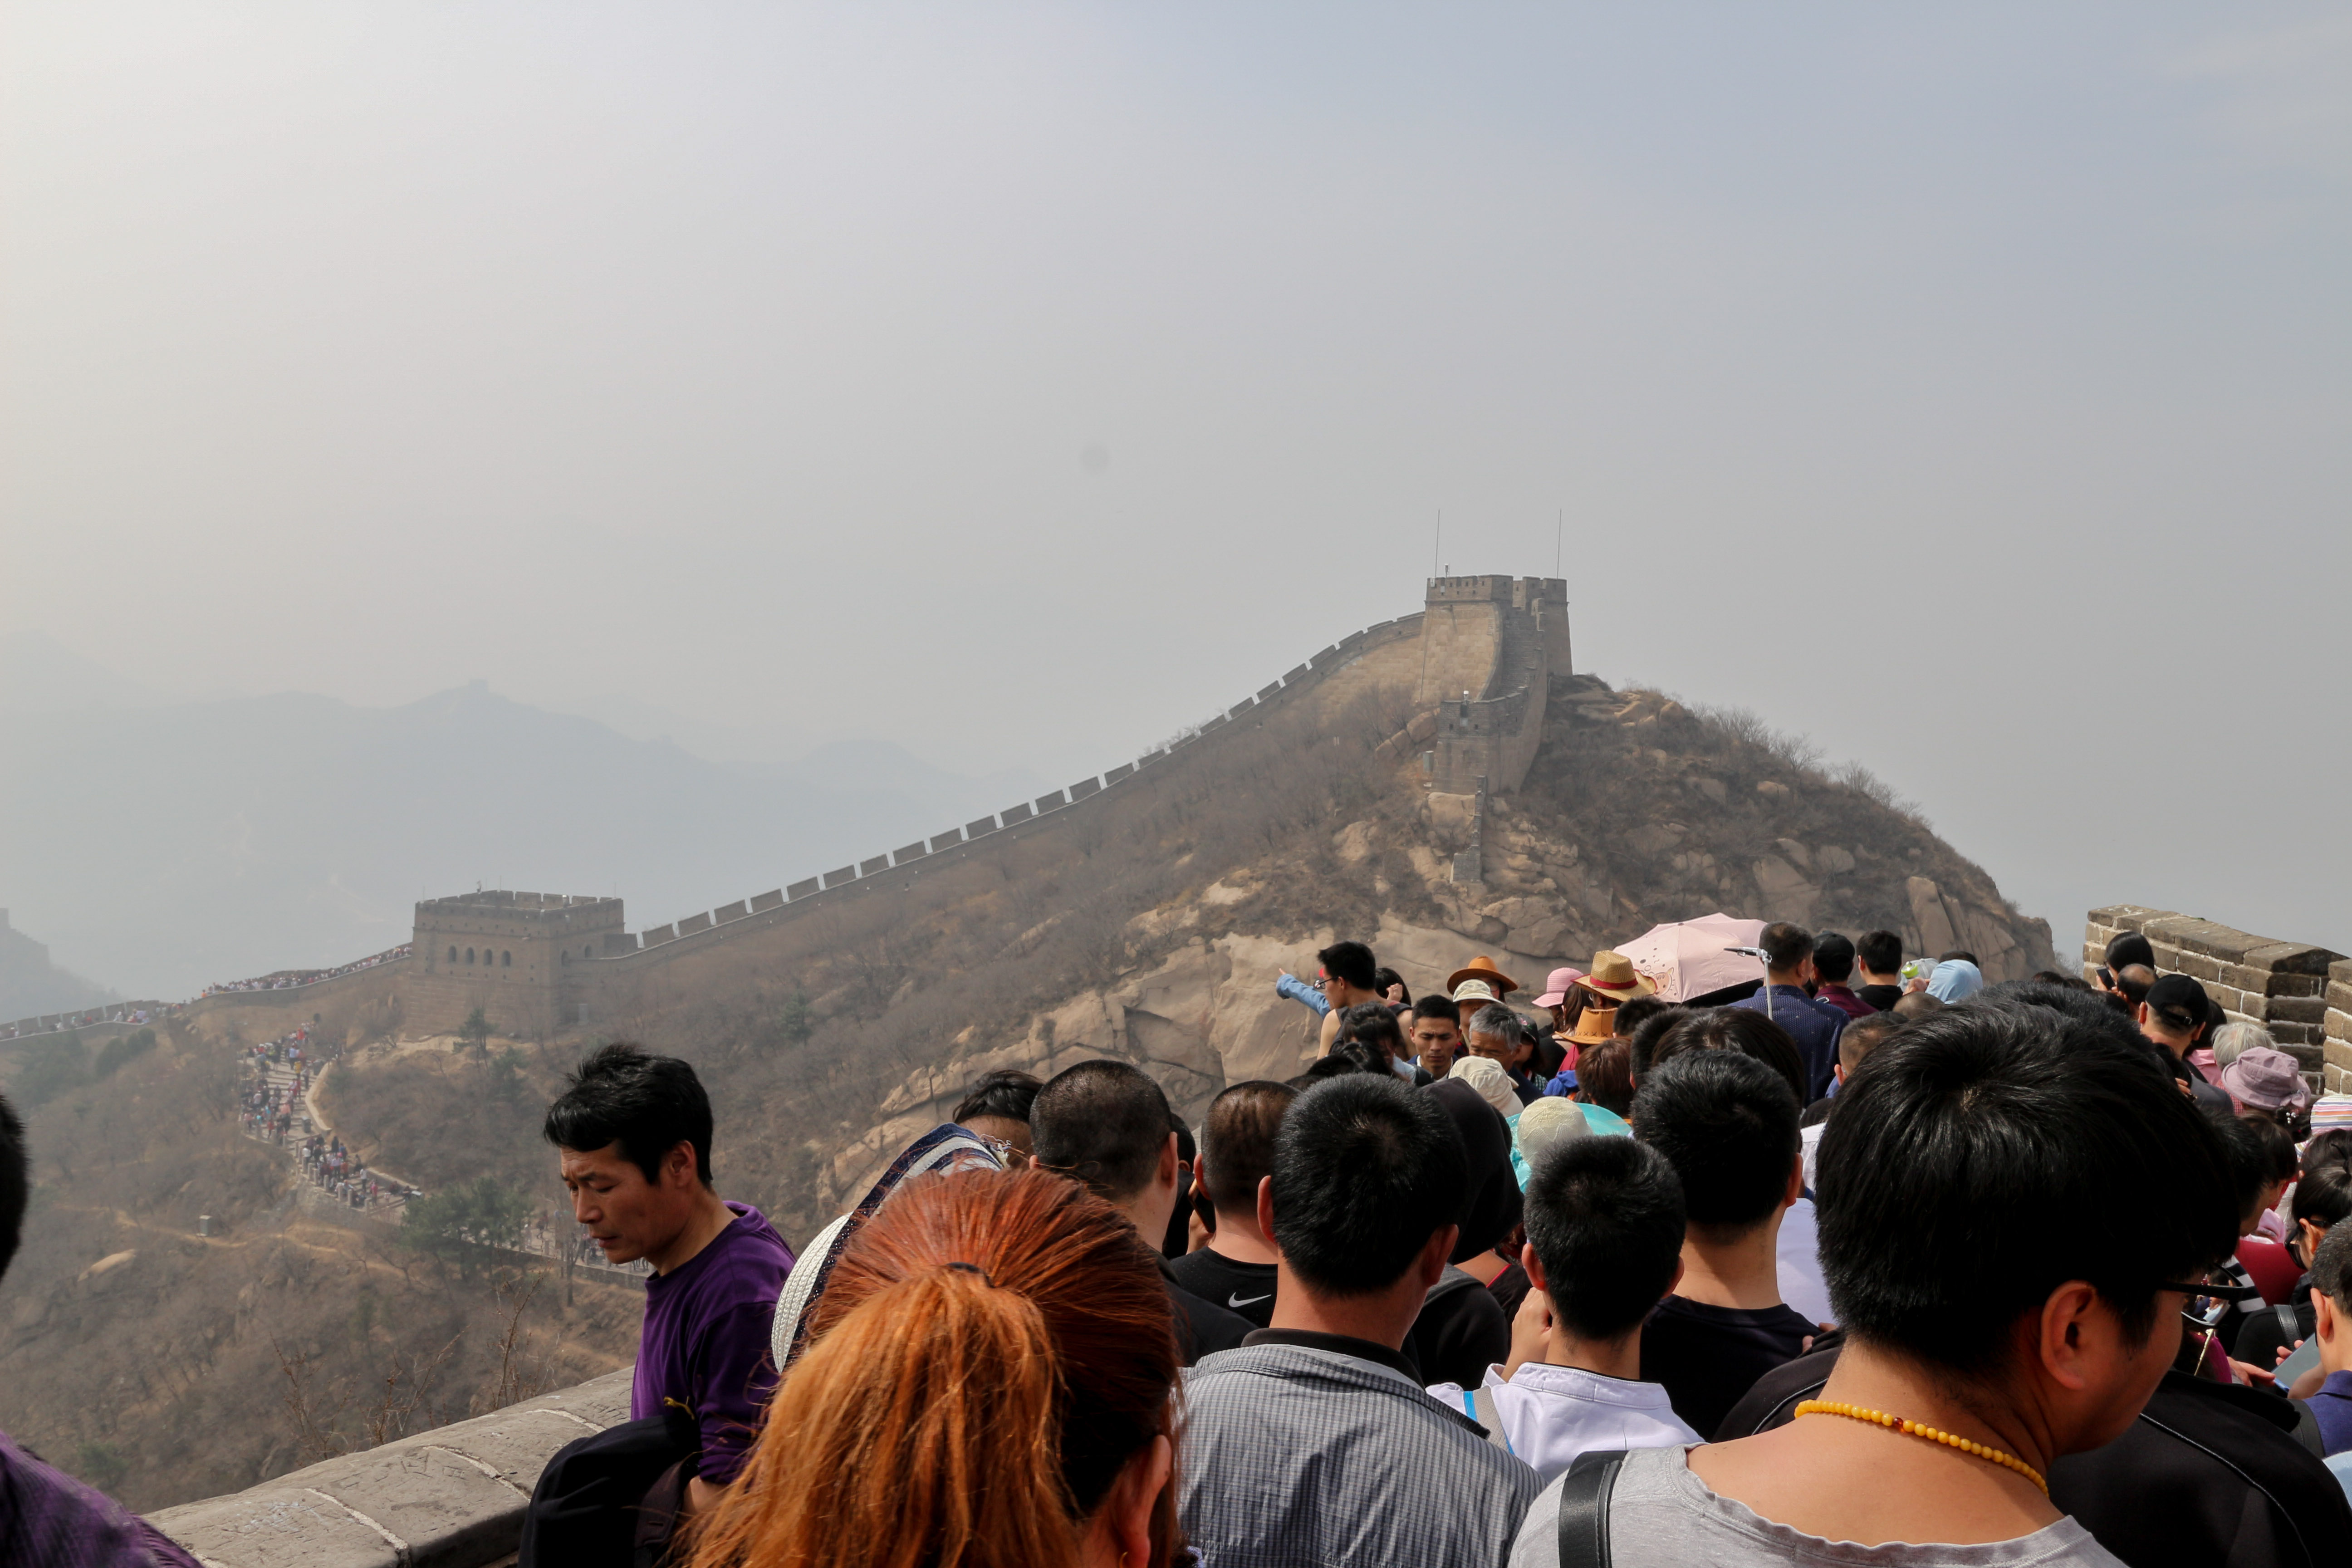 The Great Wall of China Badaling